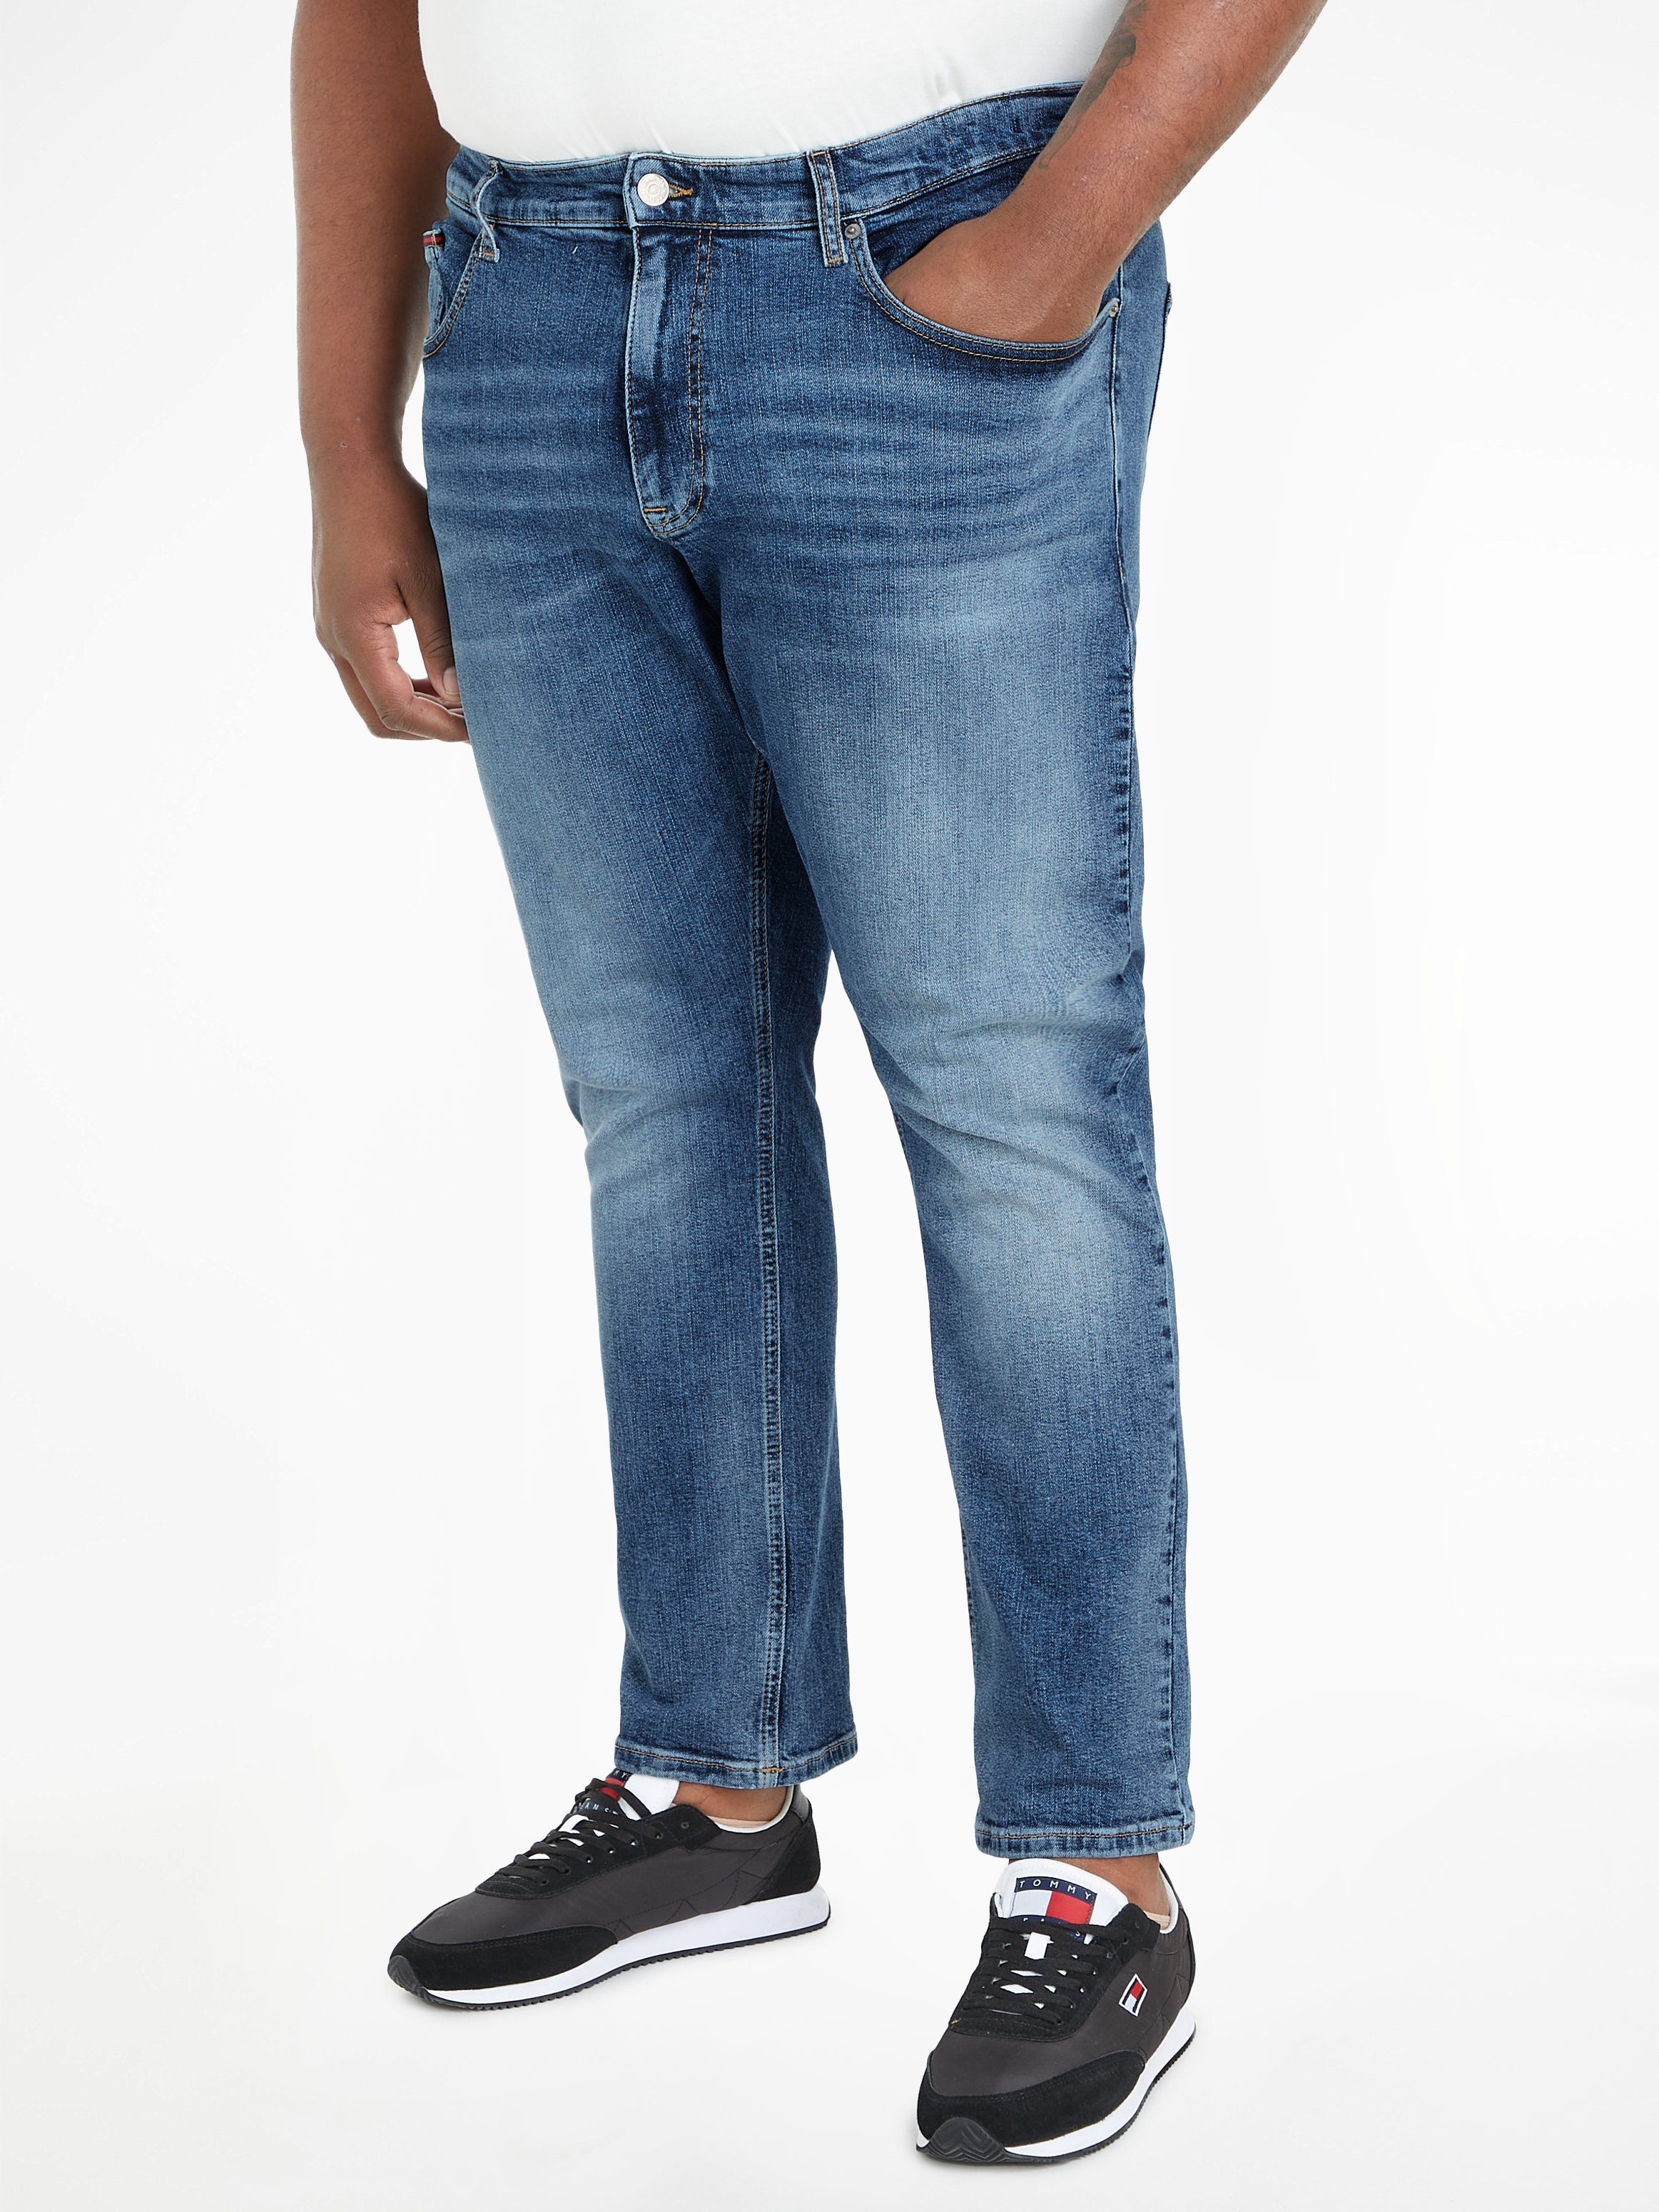 Jeans DG1219 Plus in Tommy 5-Pocket-Jeans großen Größen PLUS AUSTIN